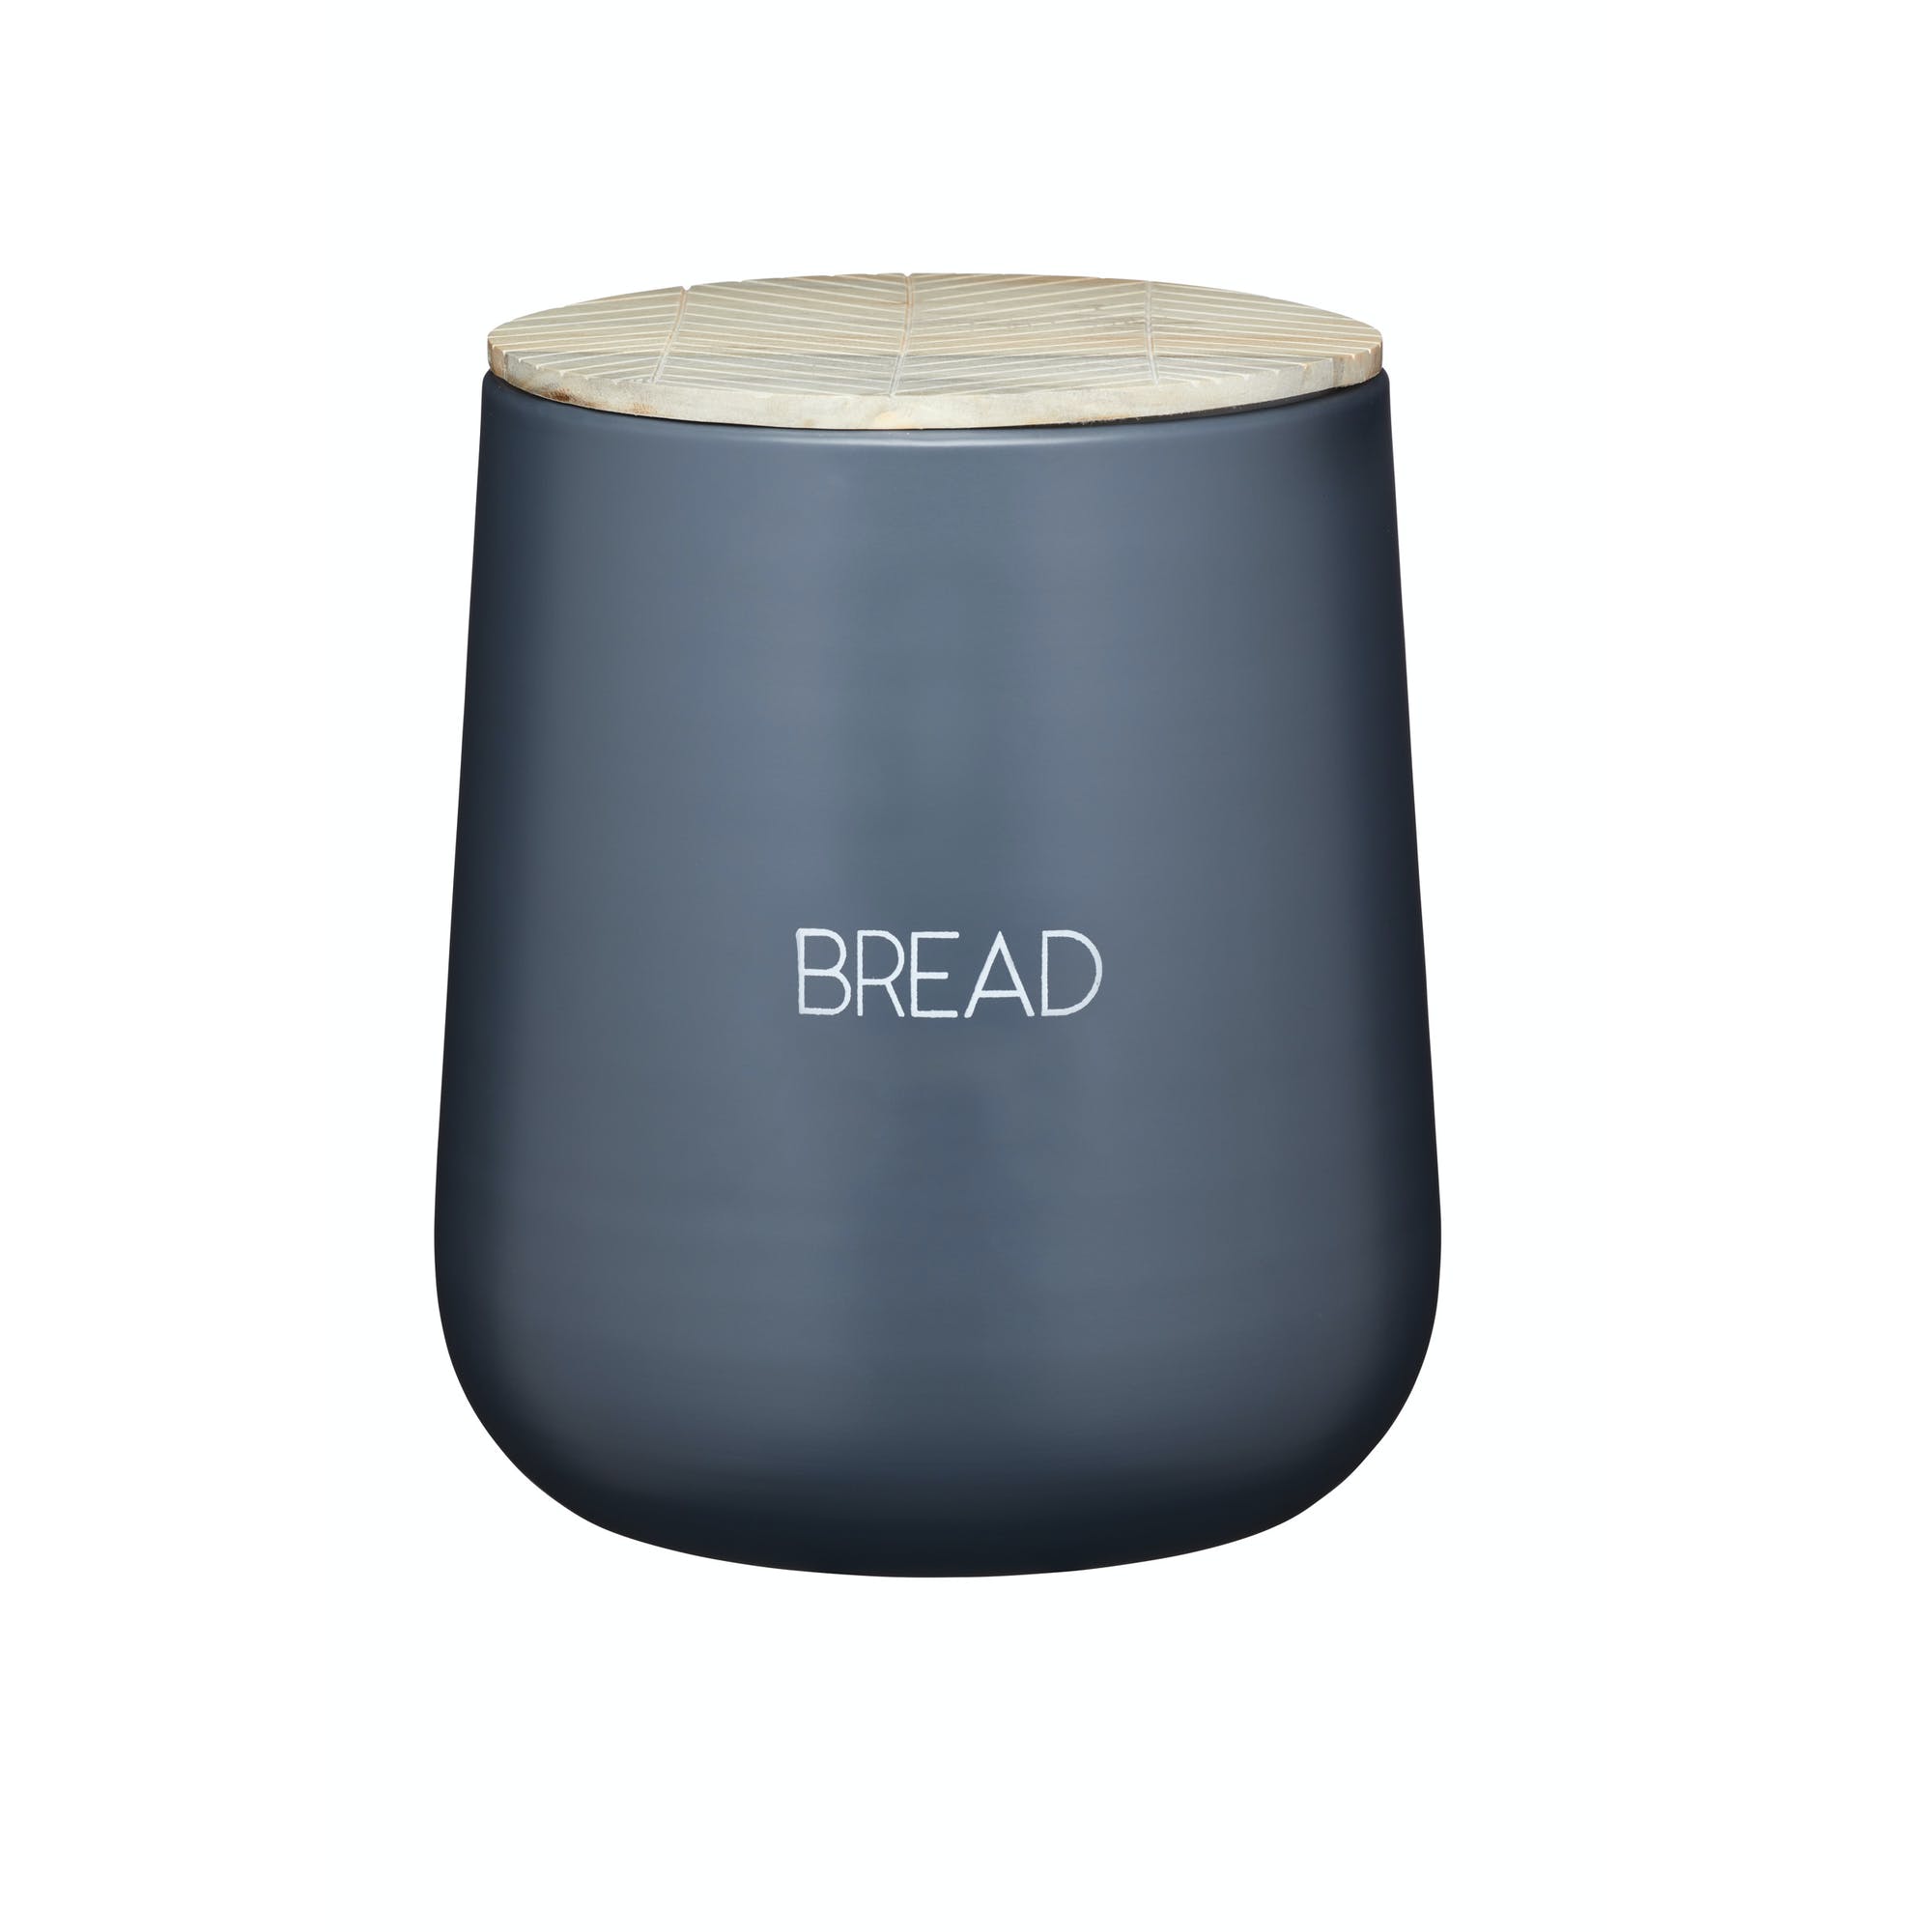 KitchenCraft Serenity dark Grey Bread Bin - The Cooks Cupboard Ltd